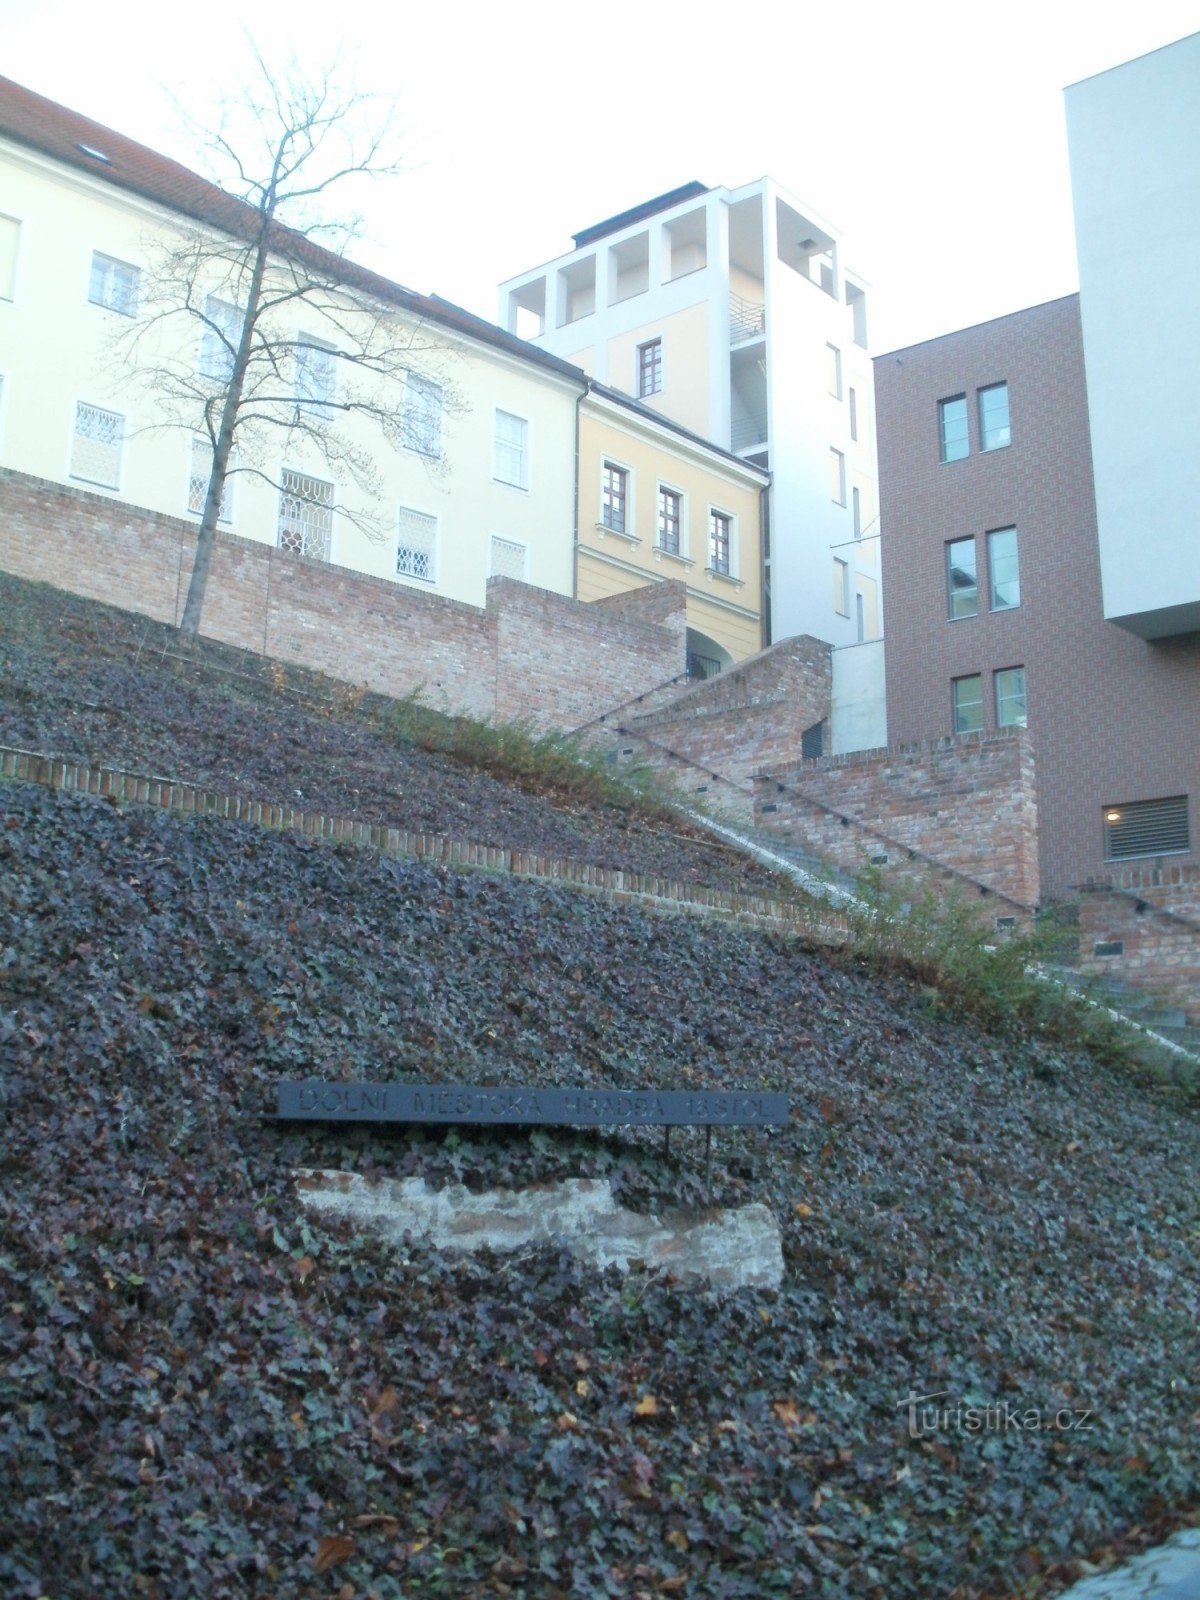 Hradec Králové - bức tường thành thấp hơn